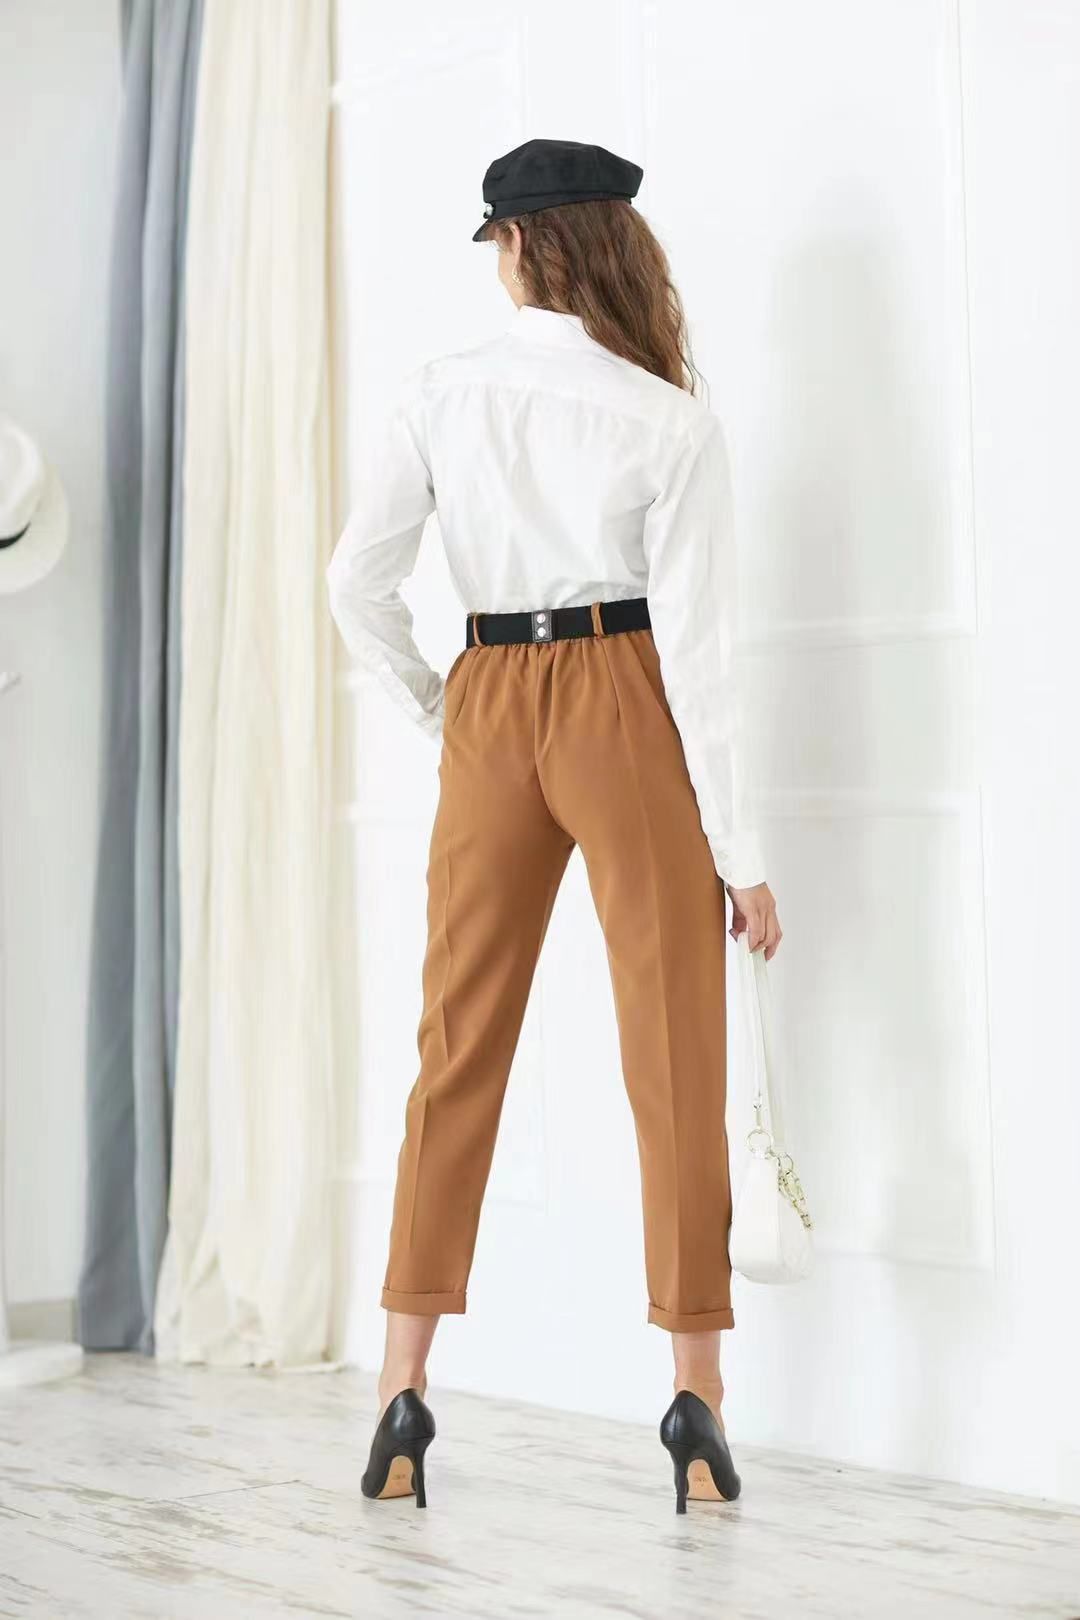 
                  
                    Pantalone Donna Vita Alta Cintura Catena Gioiello Casual Elegante Sensuale - LE STYLE DE PARIS
                  
                